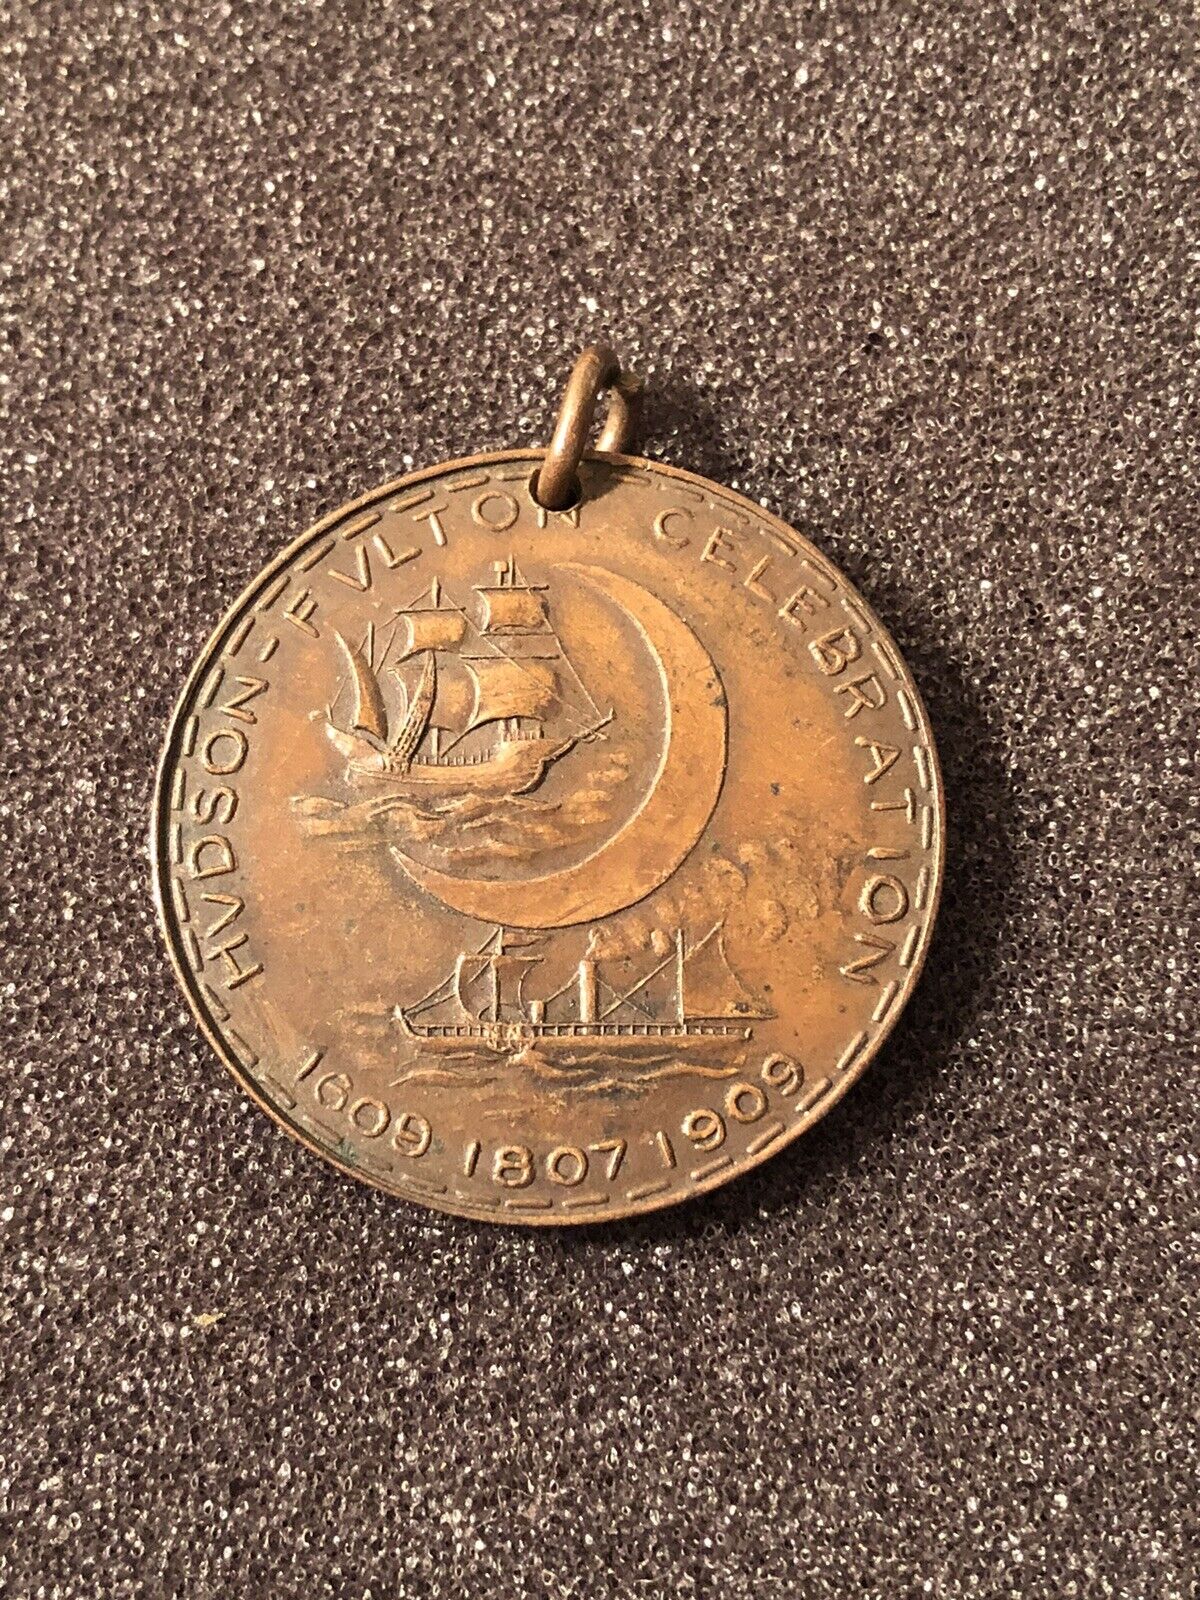 Antique 1909 Hudson Fulton Celebration Medal Token 1609-1909 Hudson River